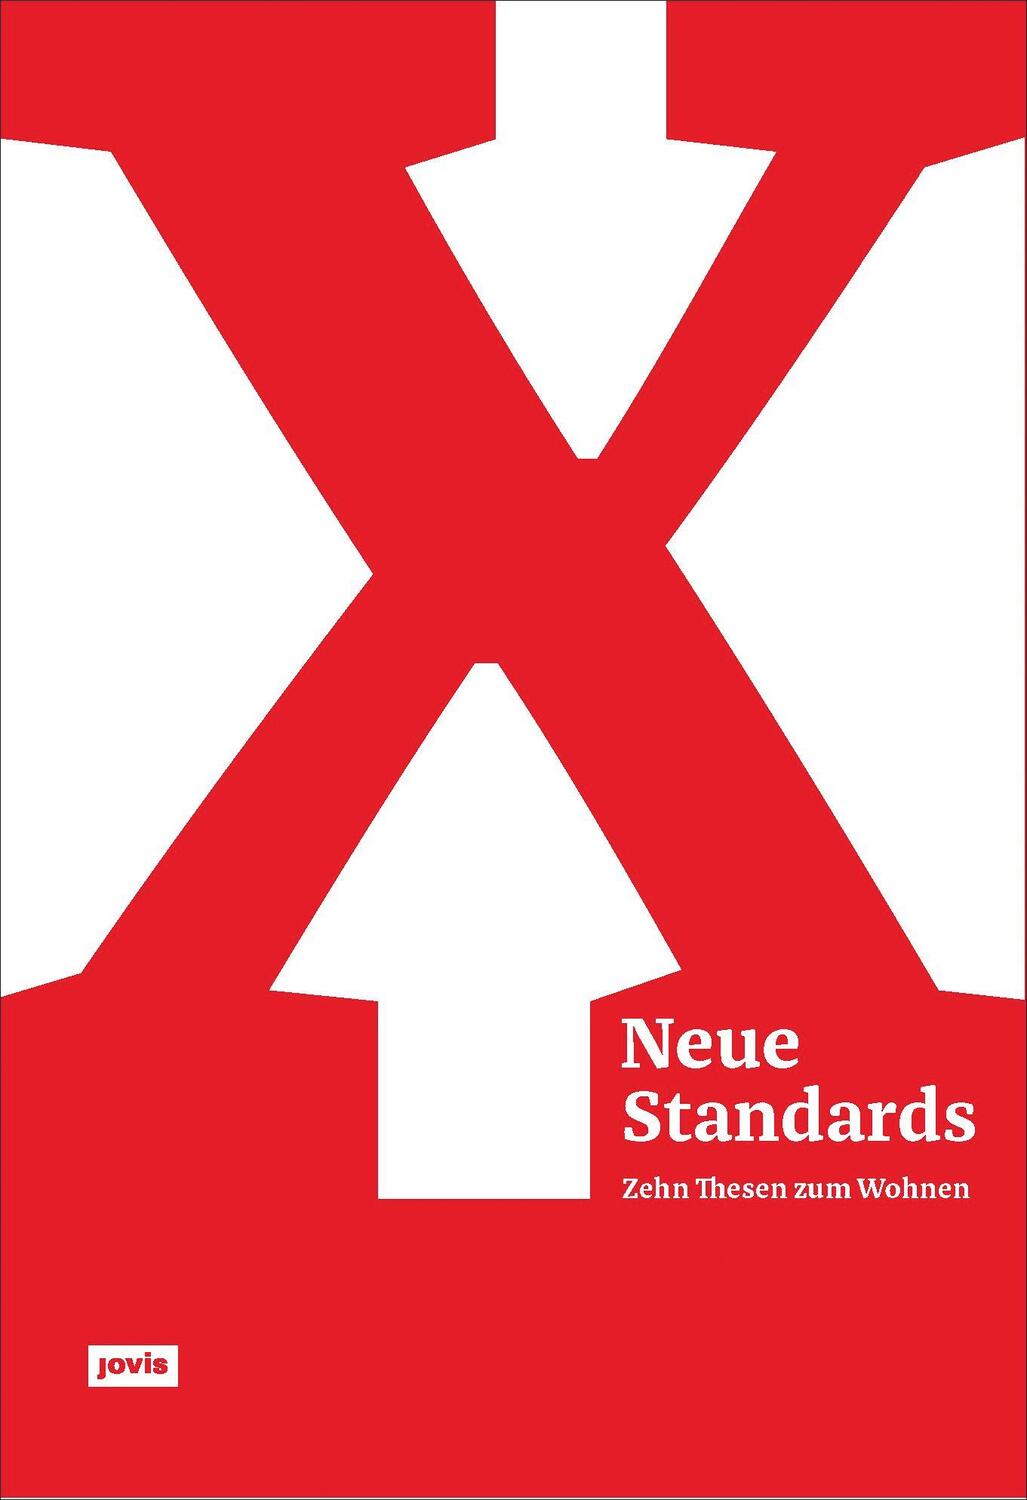 Neue Standards - Bund deutscher Architektinnen und Architekten BDA Hamburg